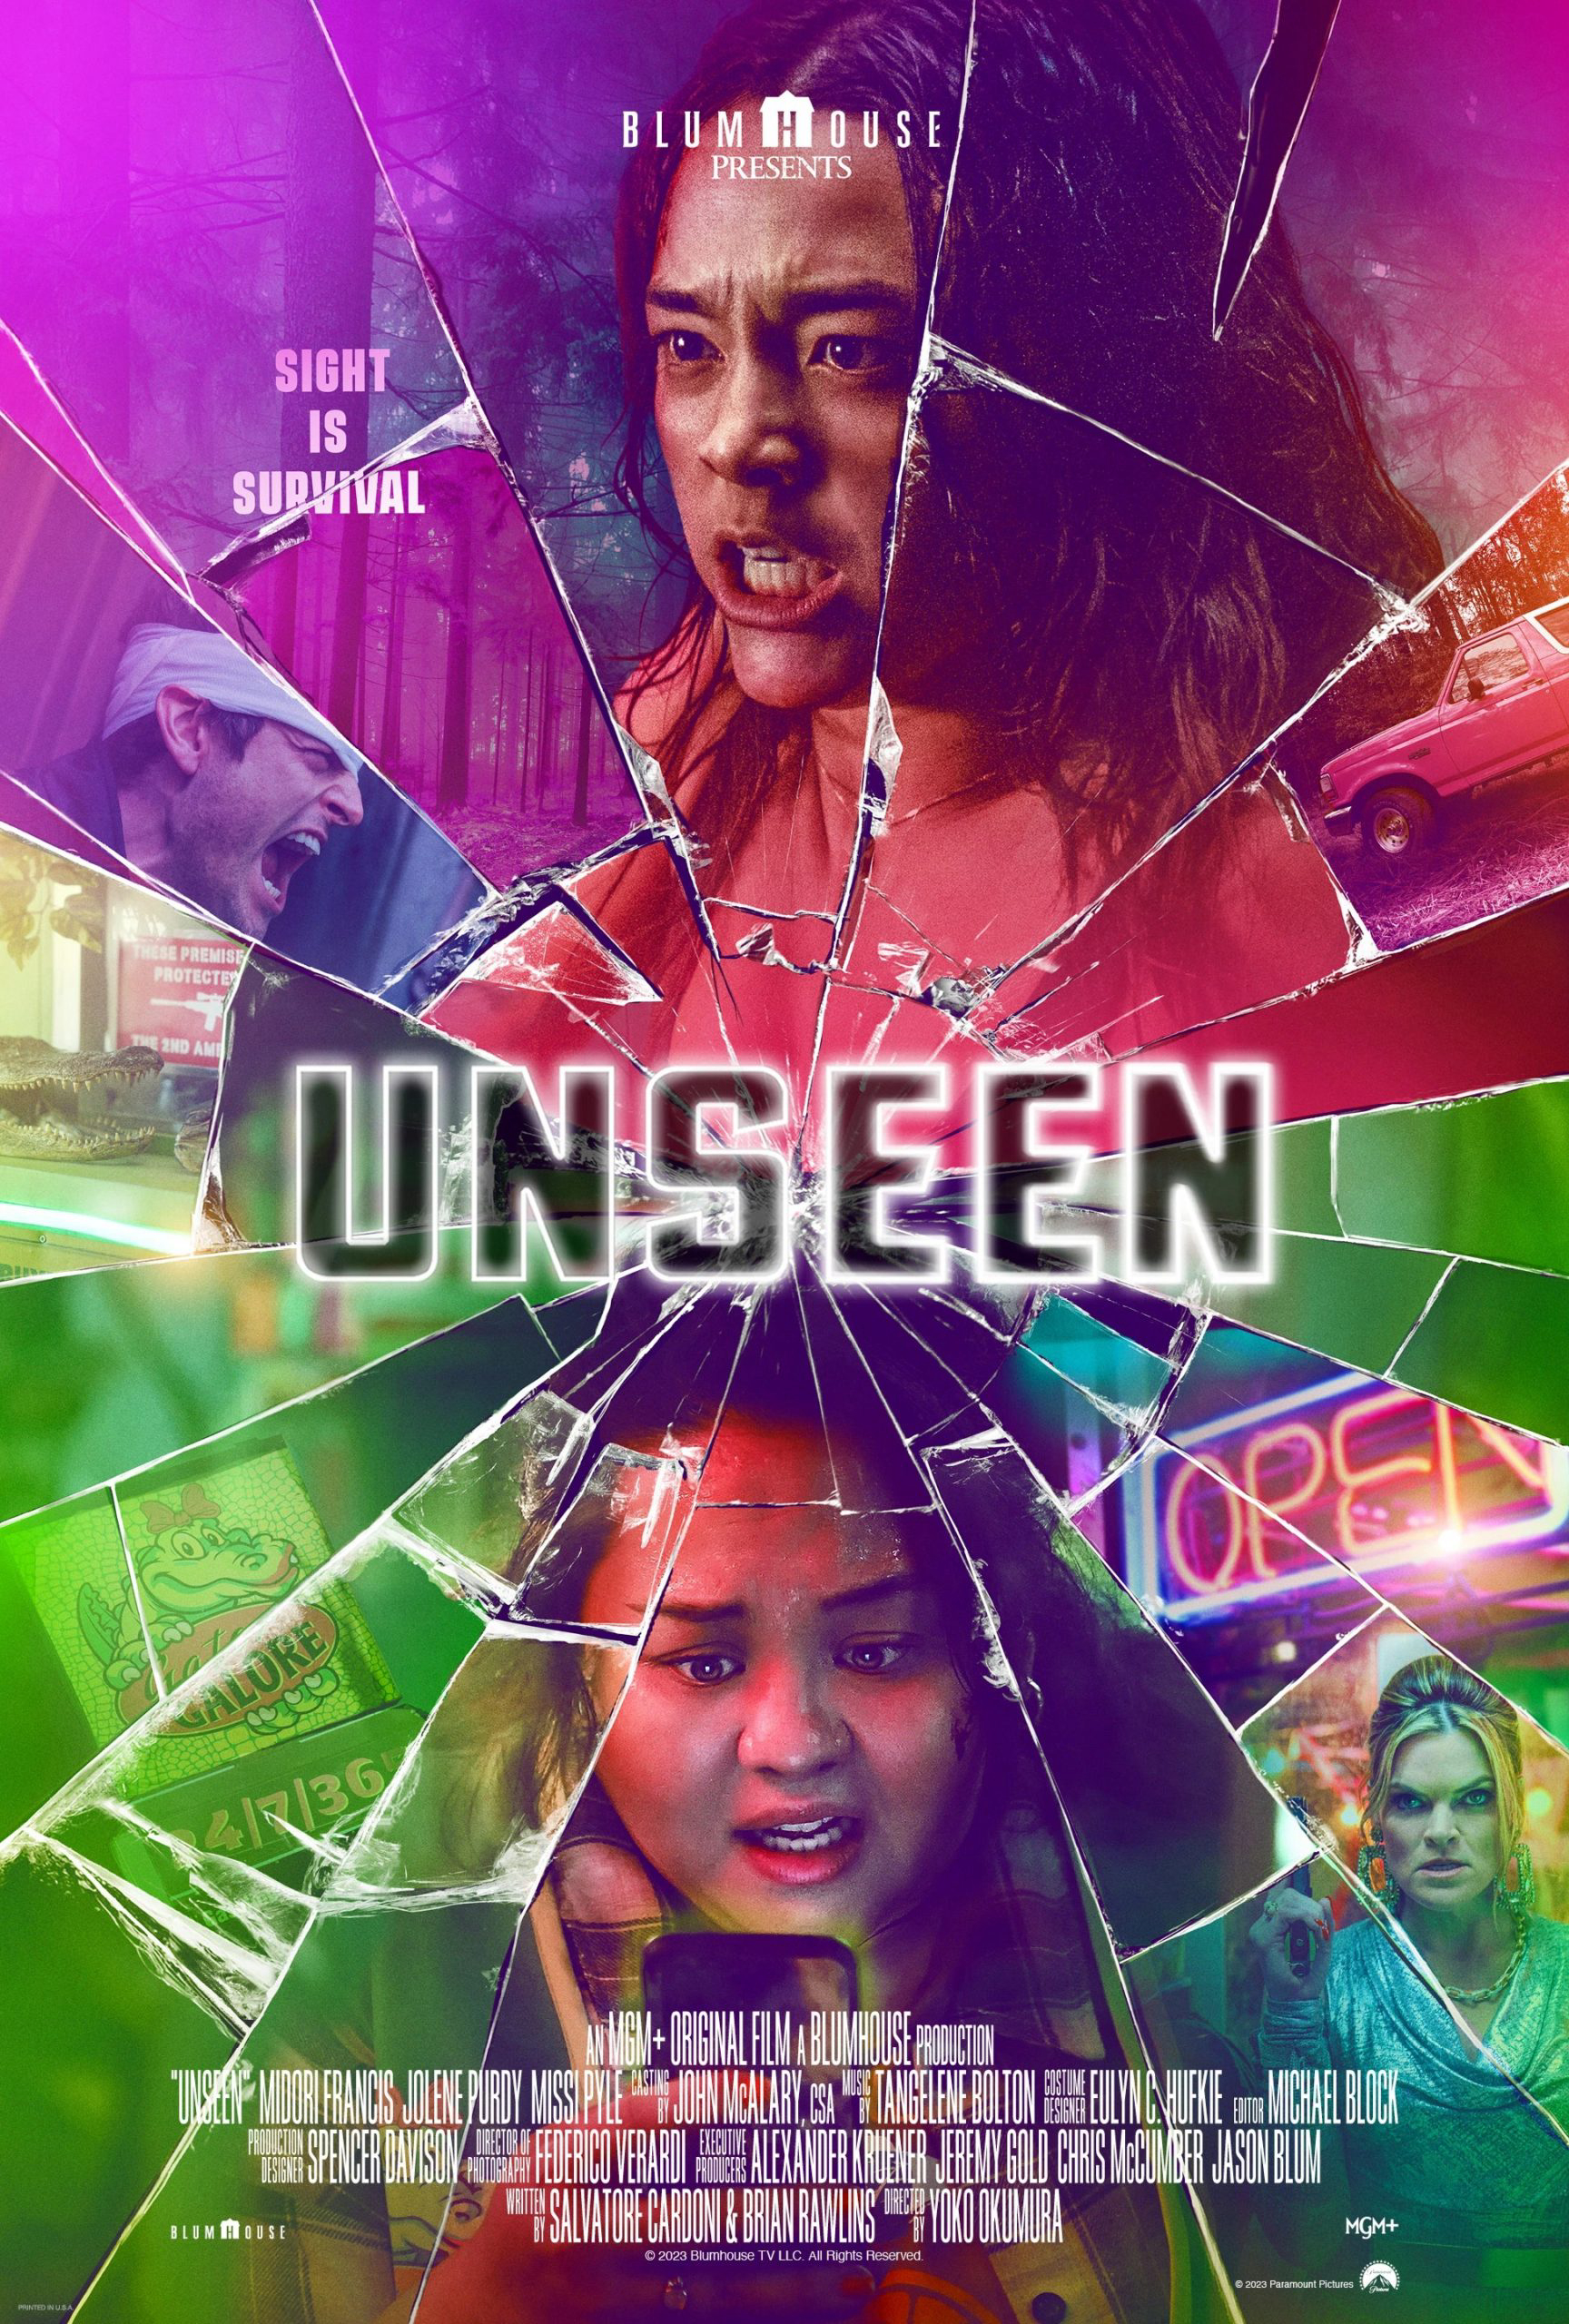 Poster Phim Unseen (Unseen)